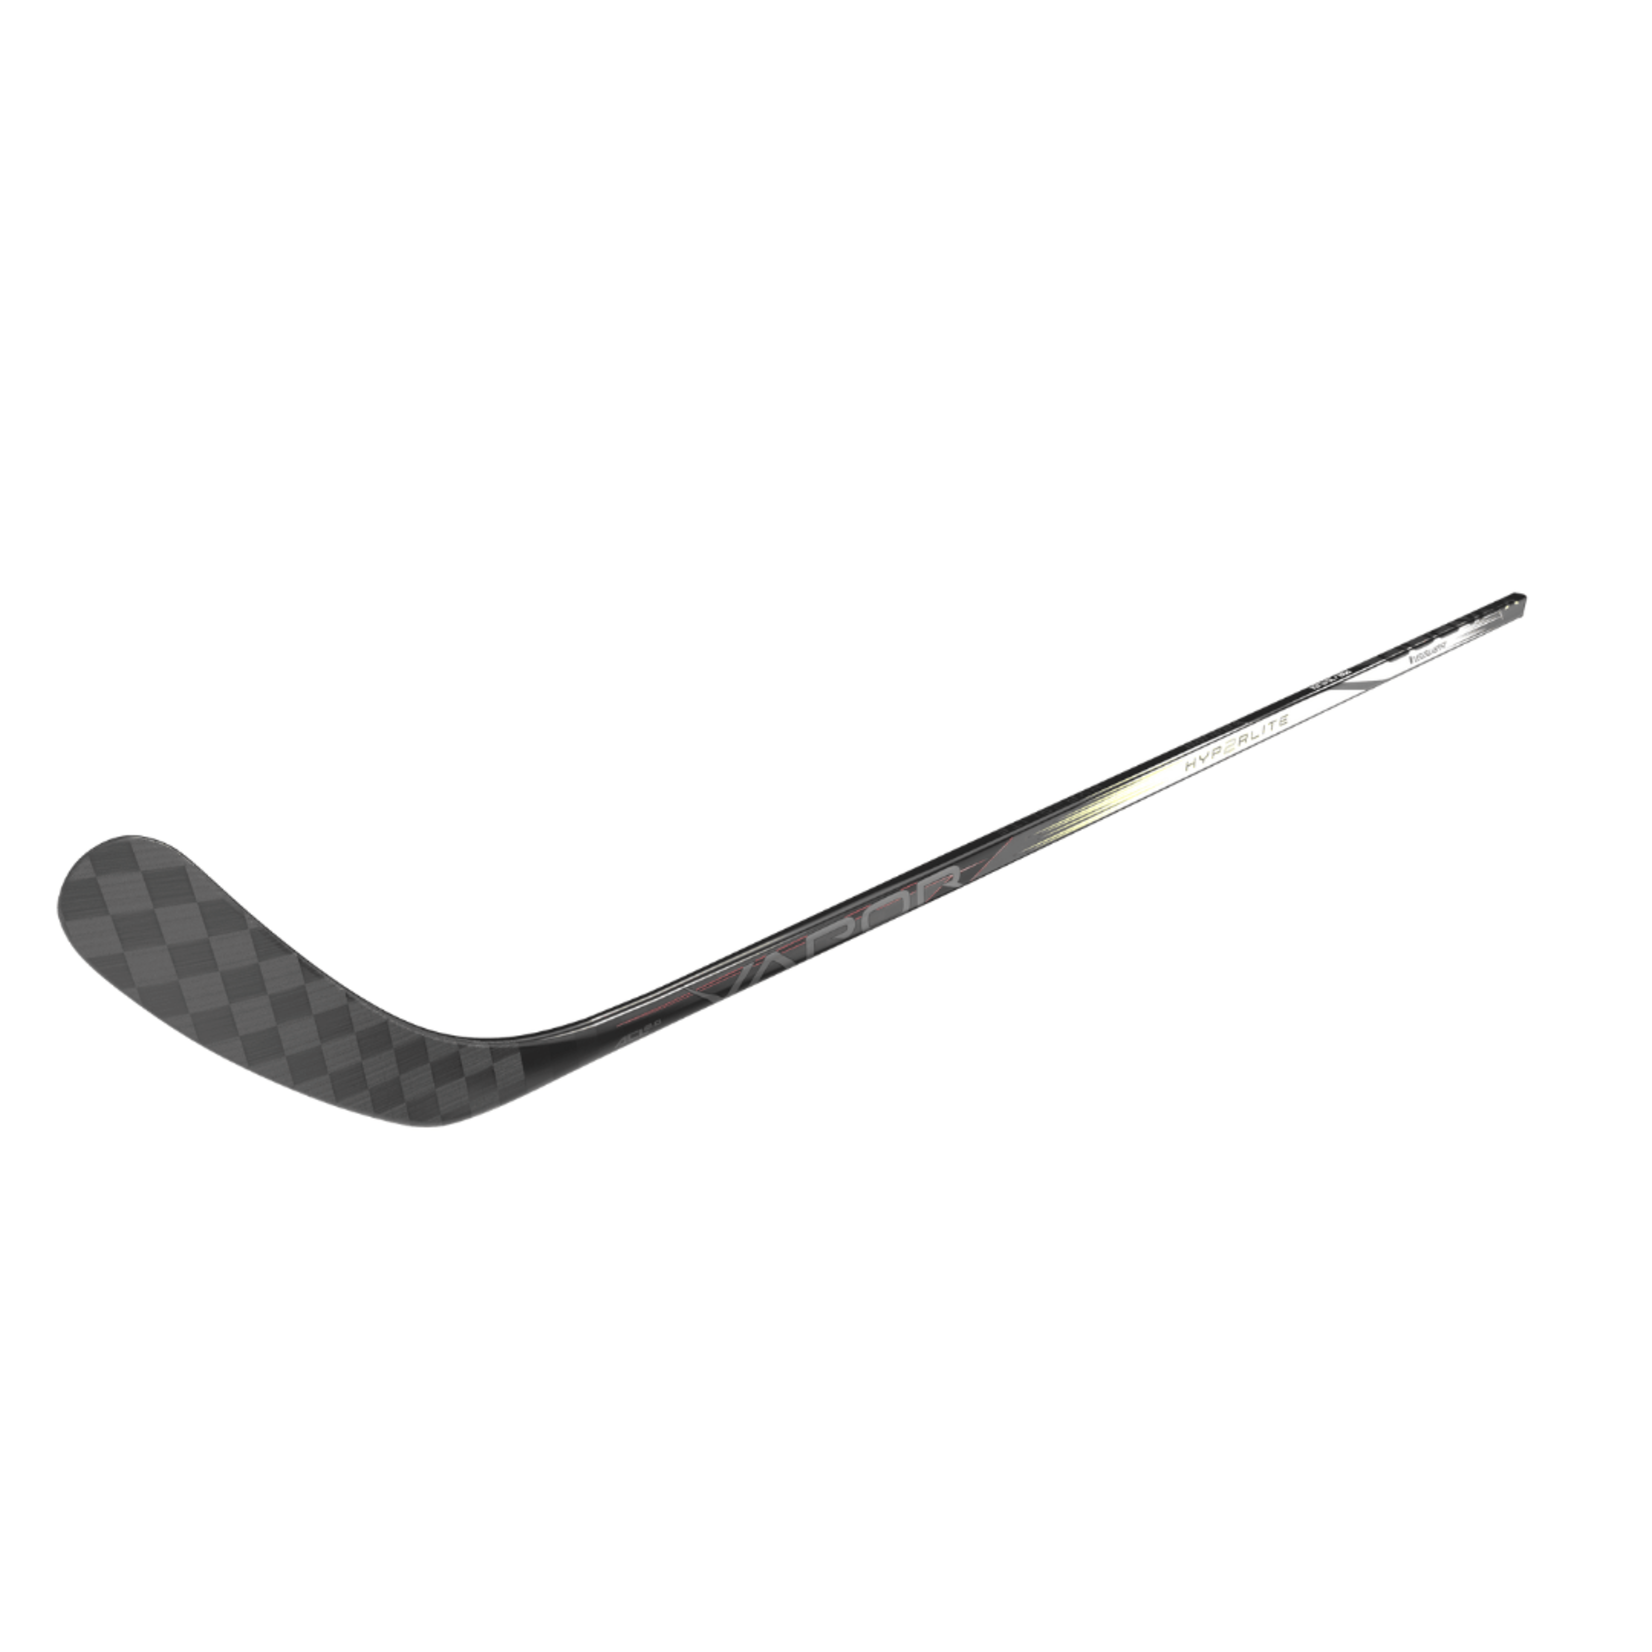 Bauer Bauer Hockey Stick, Vapor Hyperlite2, Grip, Intermediate